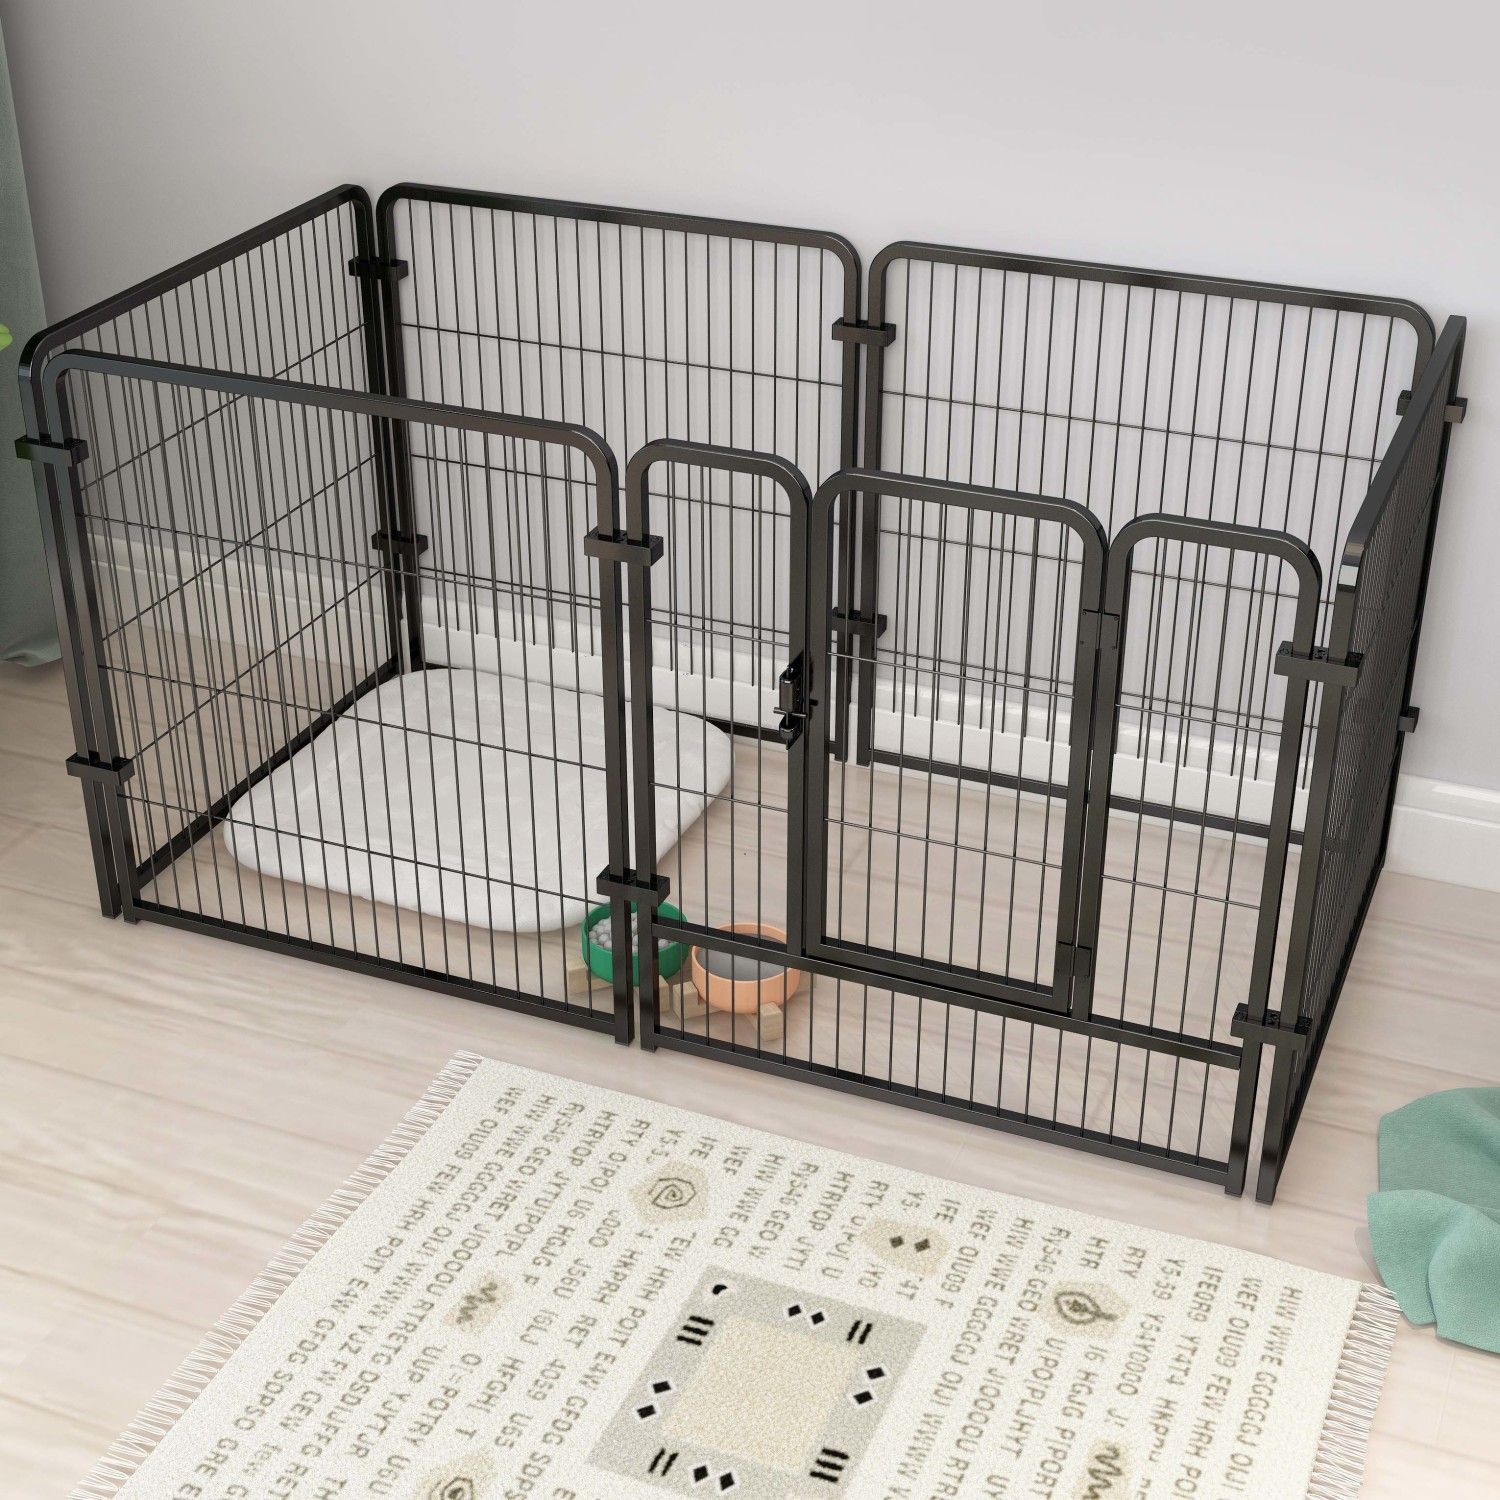 【狗籠】寵物圍欄家用室內狗圍欄超大自由空間自由組合狗柵欄訓廁專用狗籠